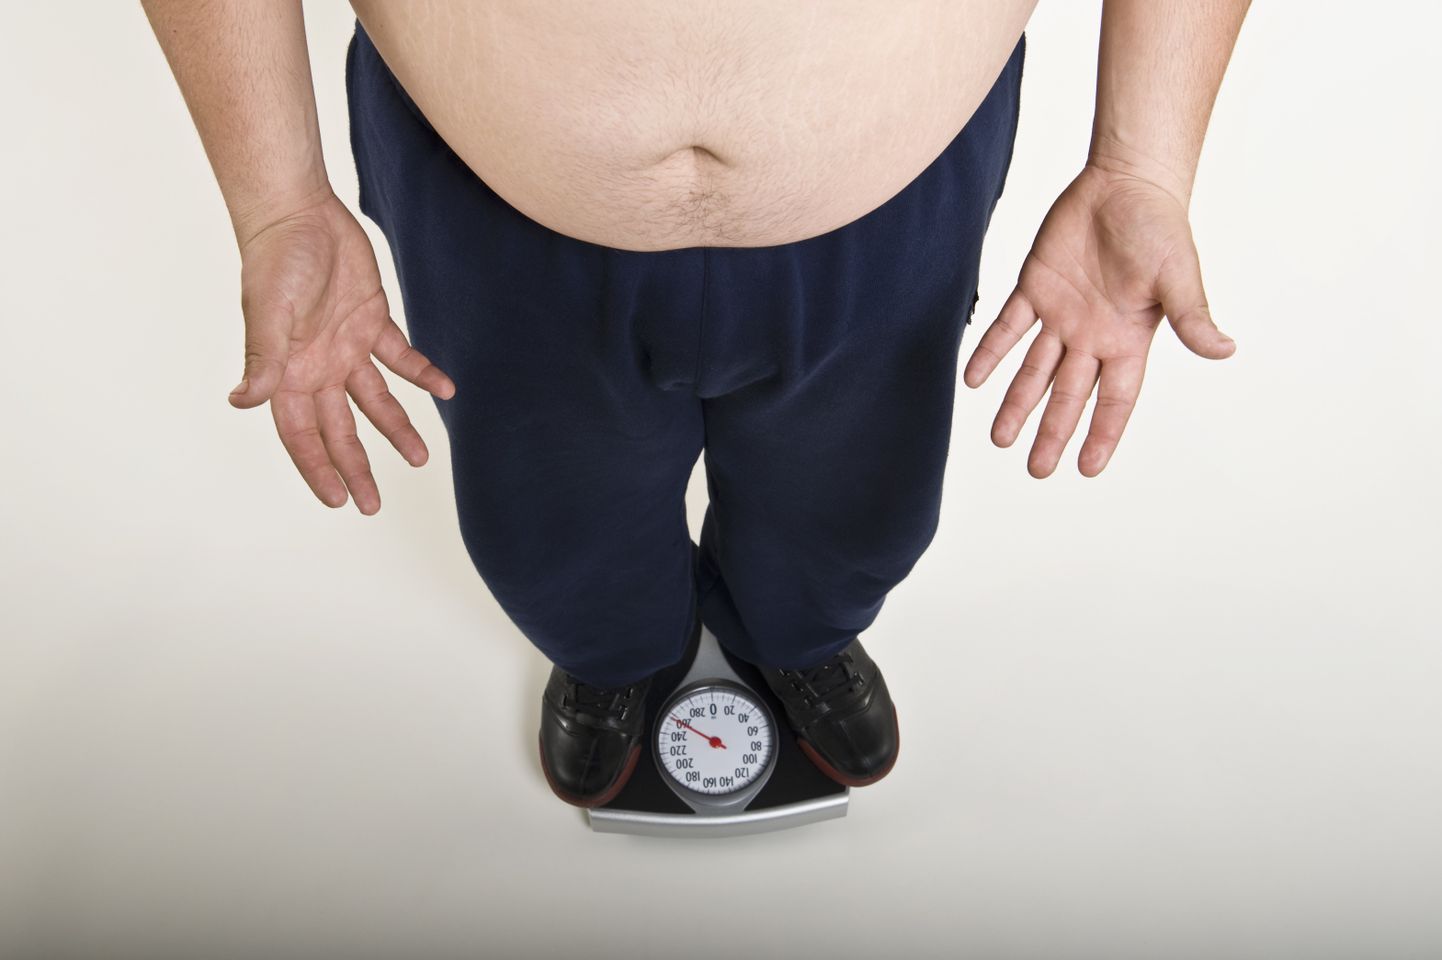 Enne 55. eluaastat juurde võetud kilod panustasid enam krooniliste haiguste tekkimisse.